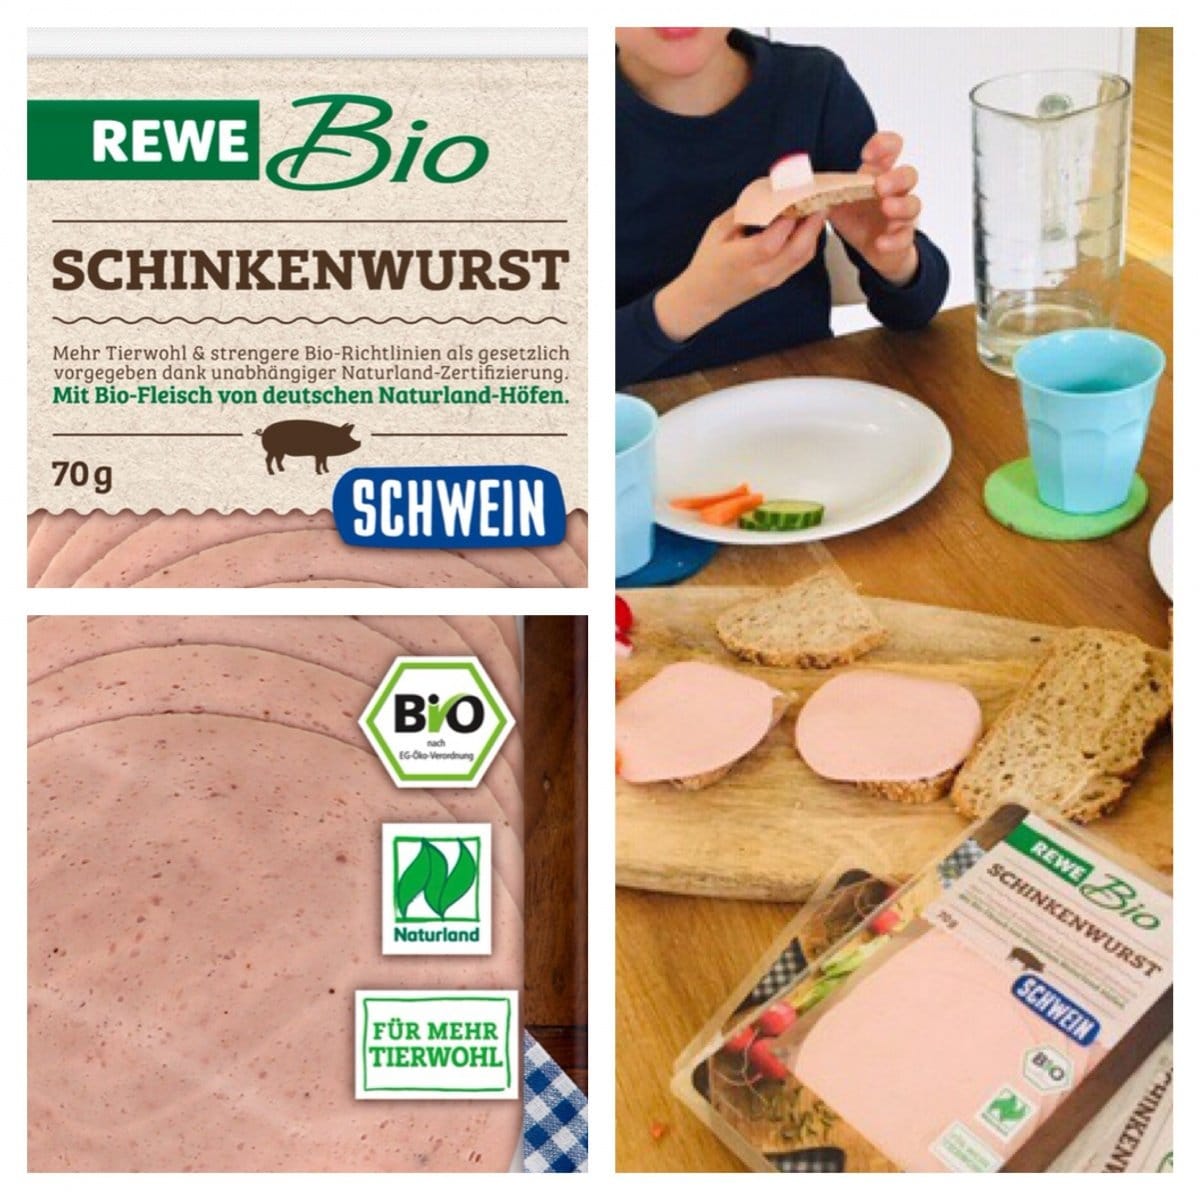 schinkenwurst collage